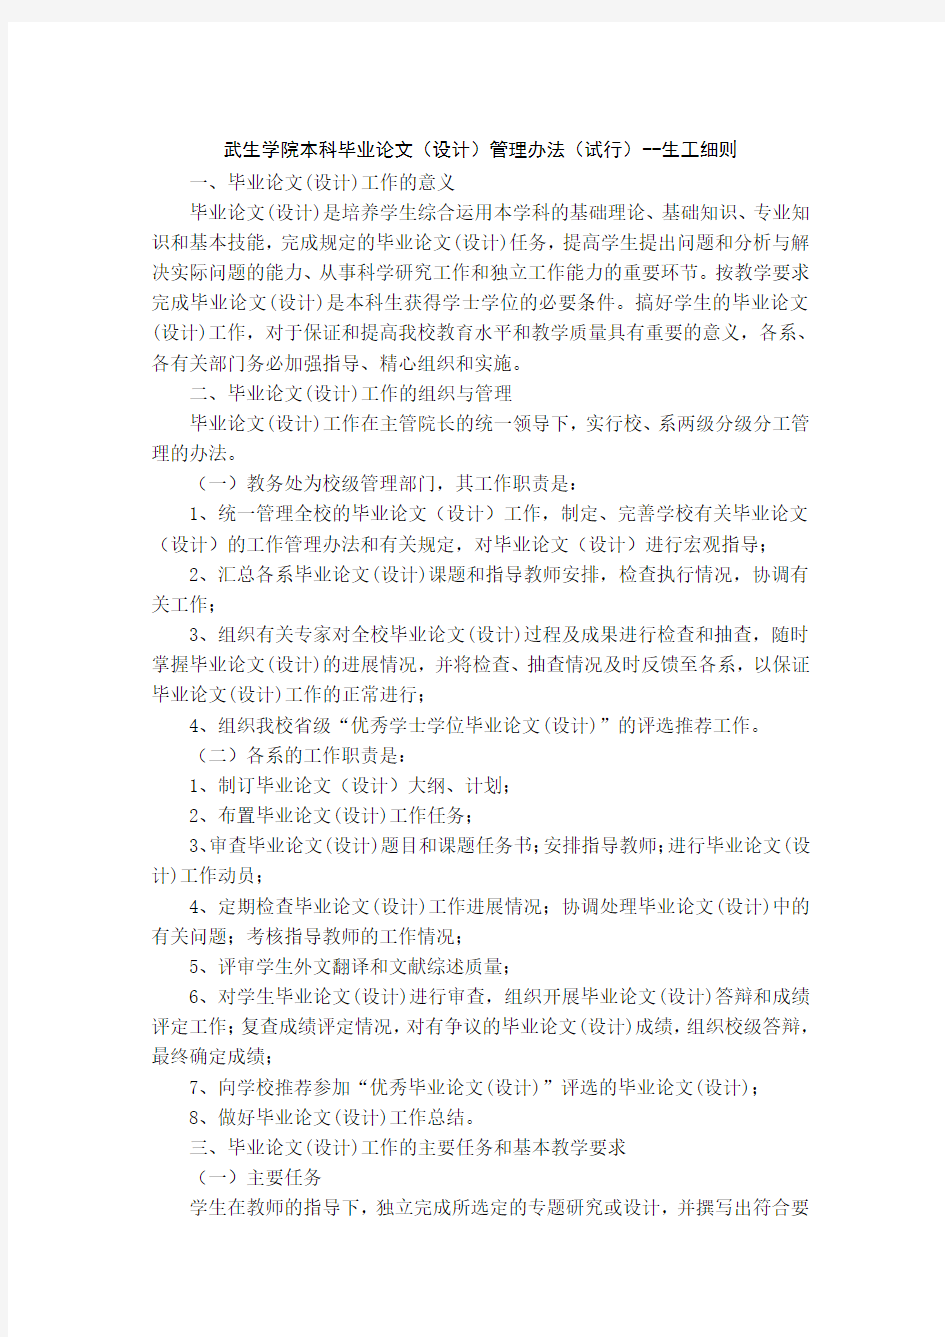 武汉生物工程学院毕业论文(设计)撰写规范-生工细则